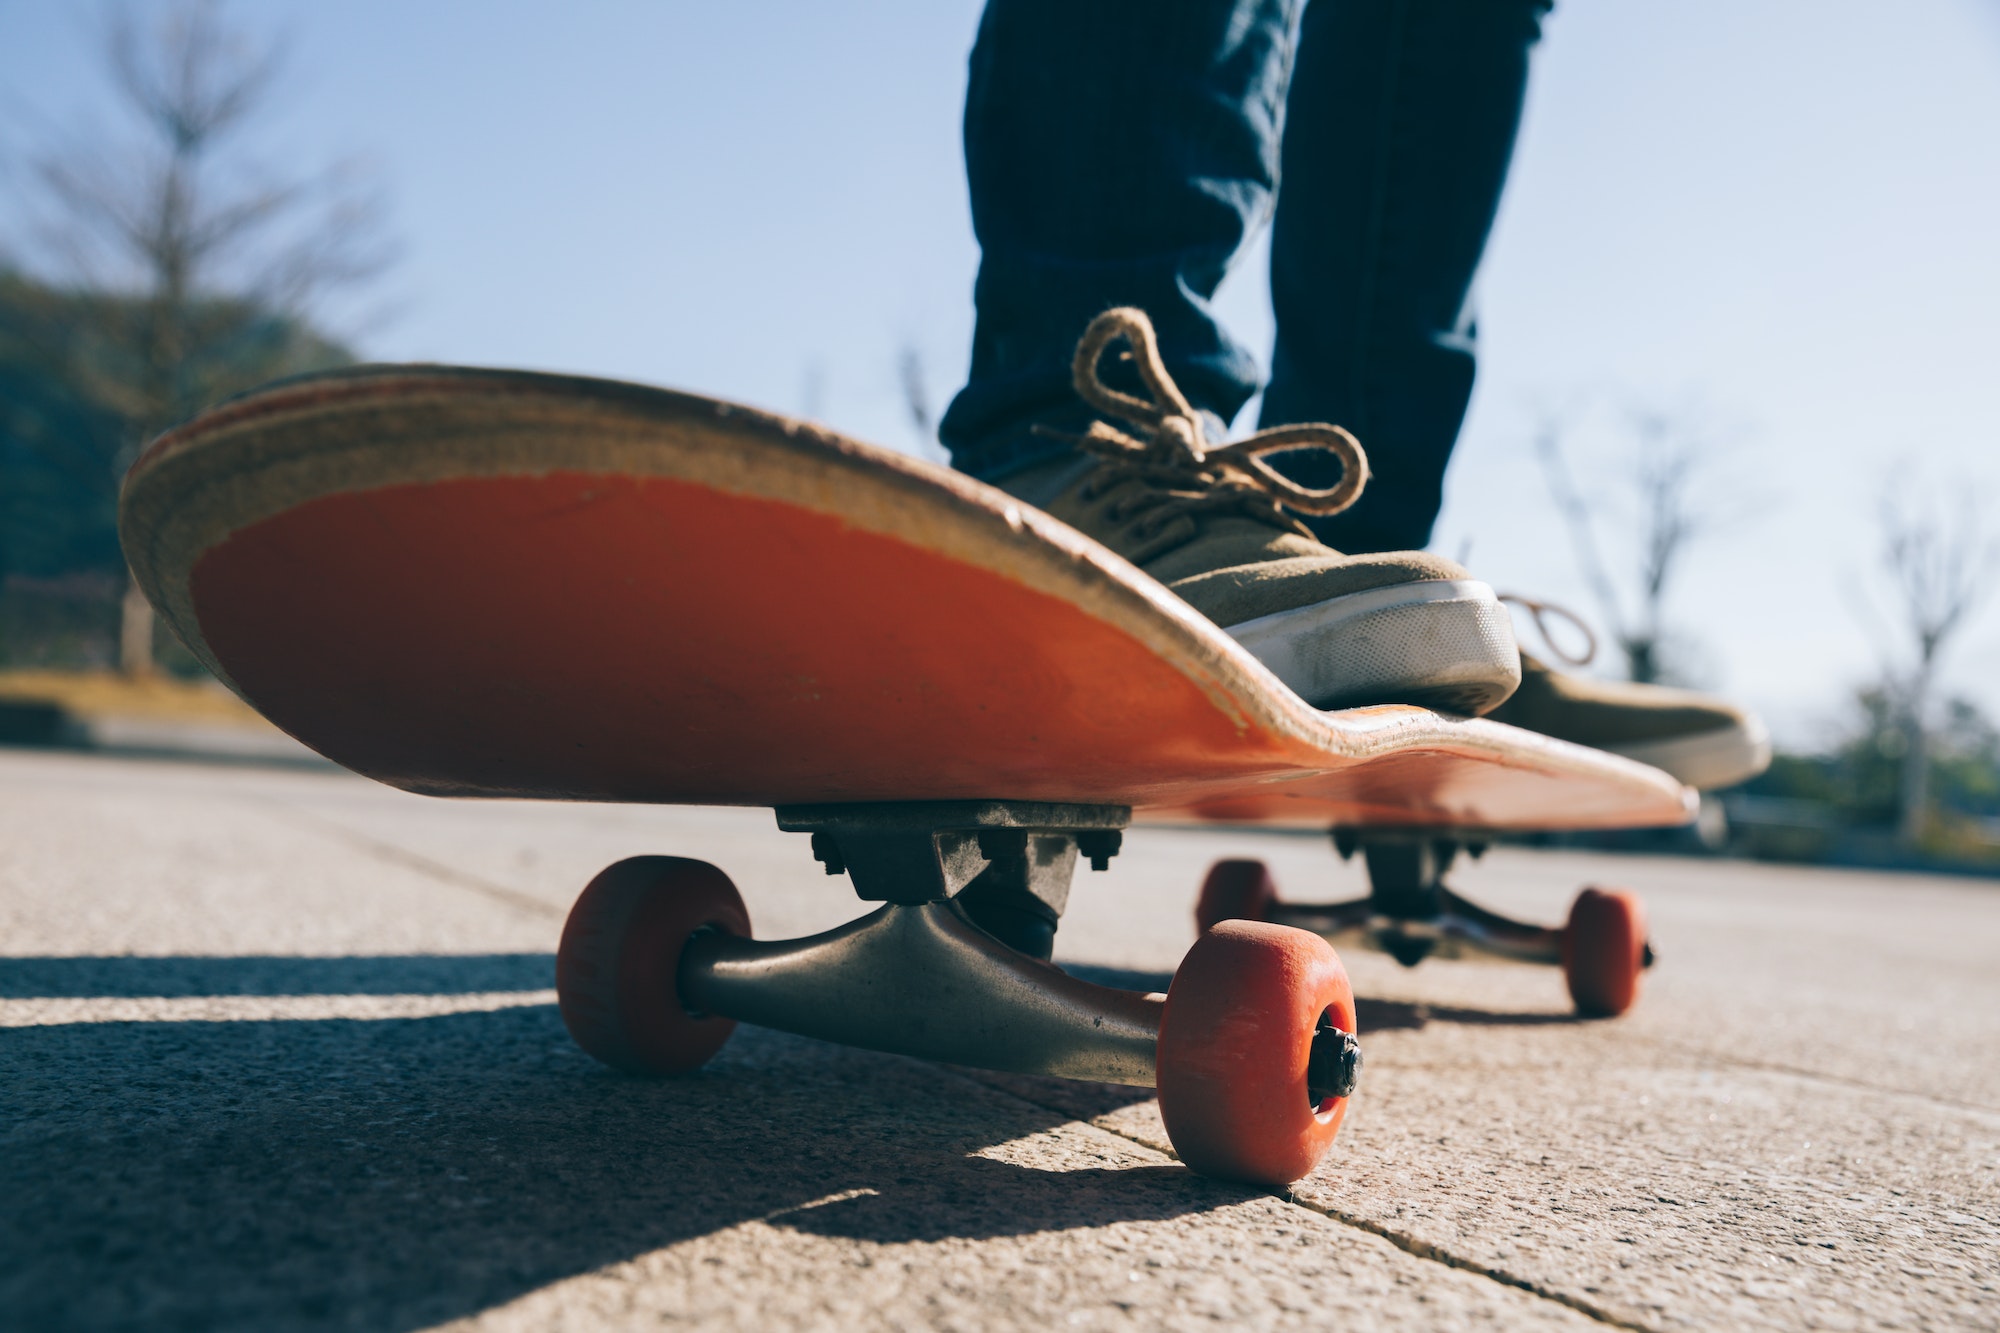 Skateboarder skateboarding outdoors on sunny morning